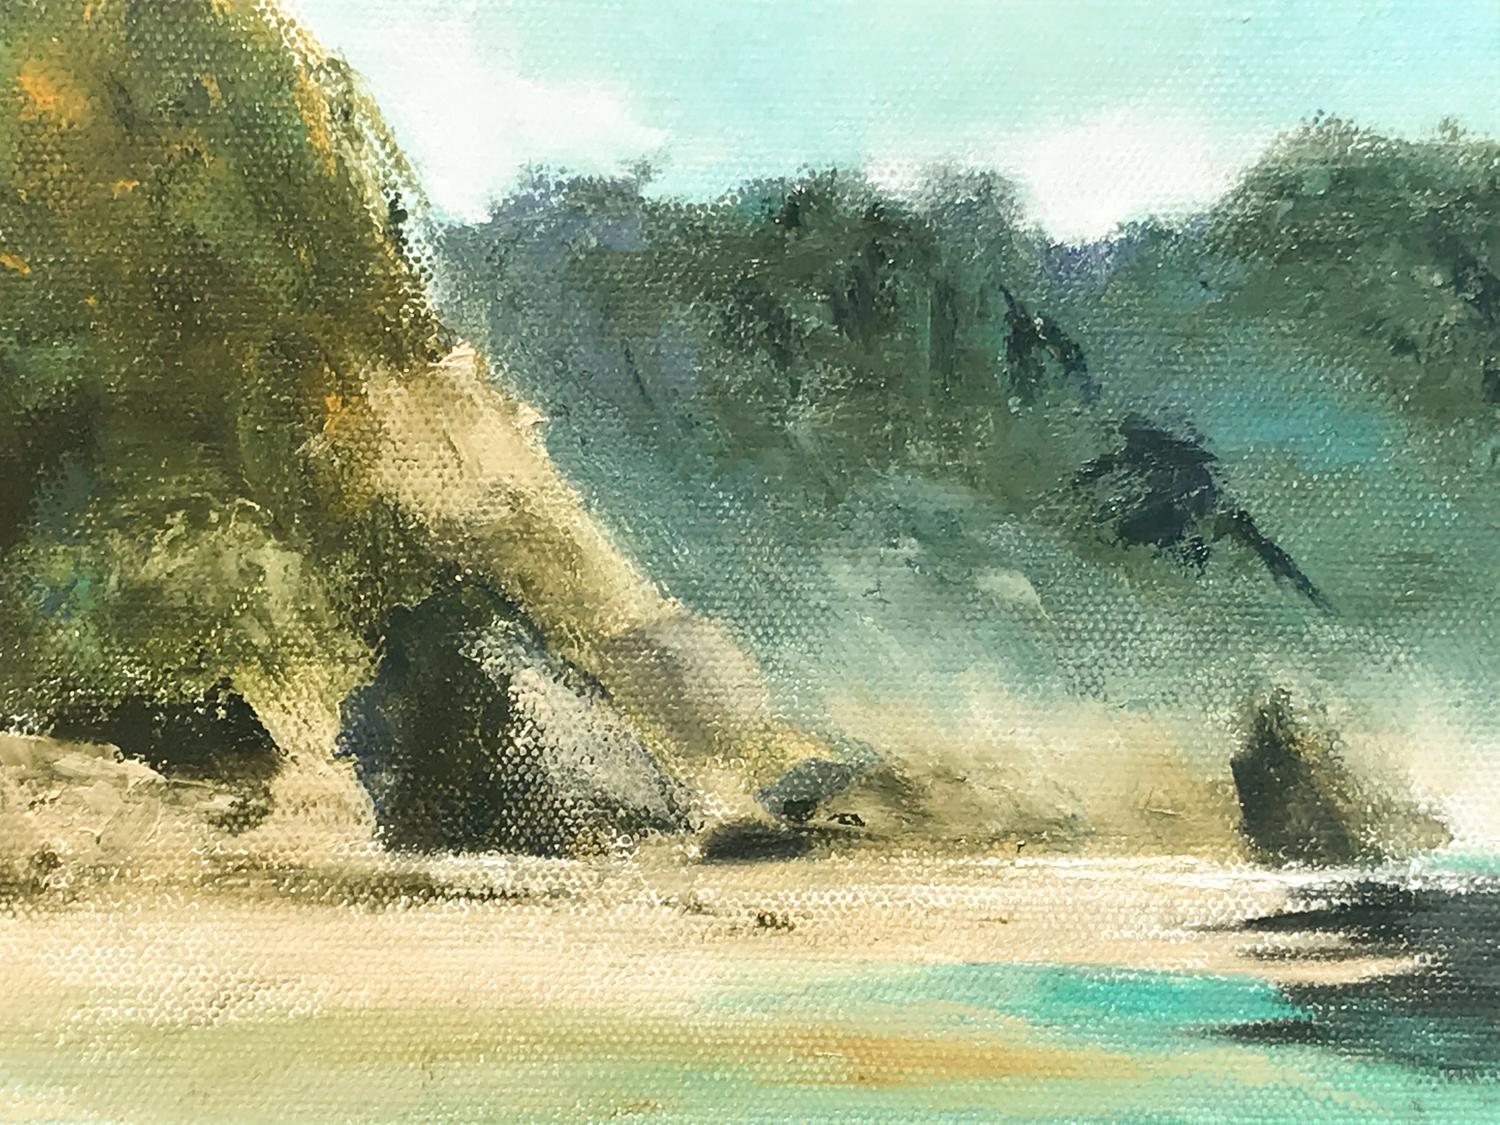 Aqua Dreamscape, Oil Painting - Beige Landscape Painting by Mandy Main